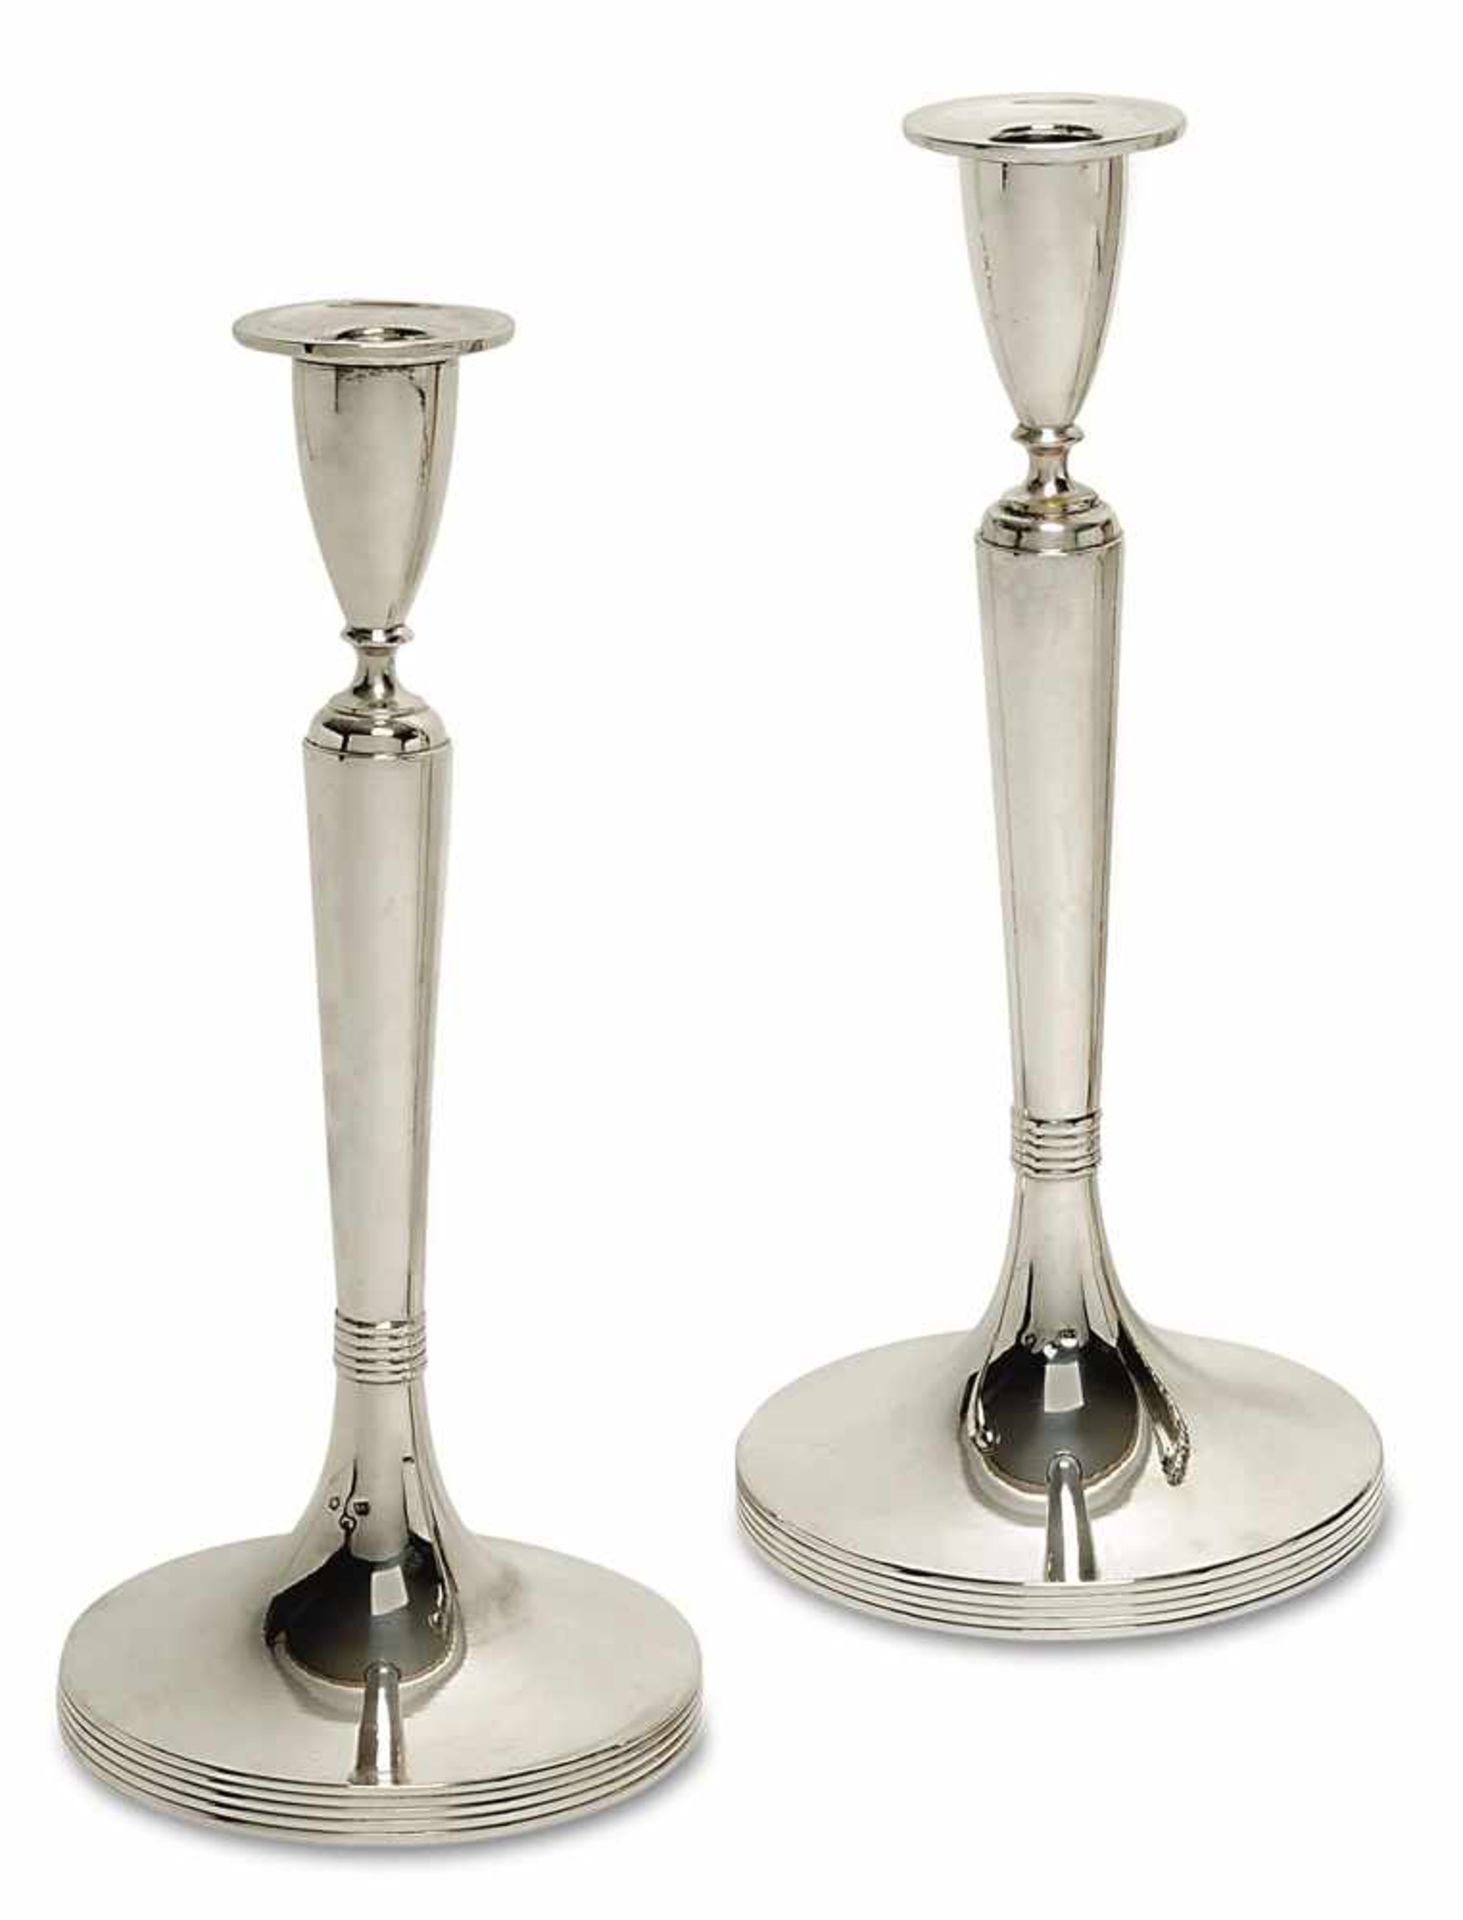 Ein Paar Kerzenleuchter Pest, 1872 - 1922 Silber. Glatte, konische Vasentülle auf konischem Schaft